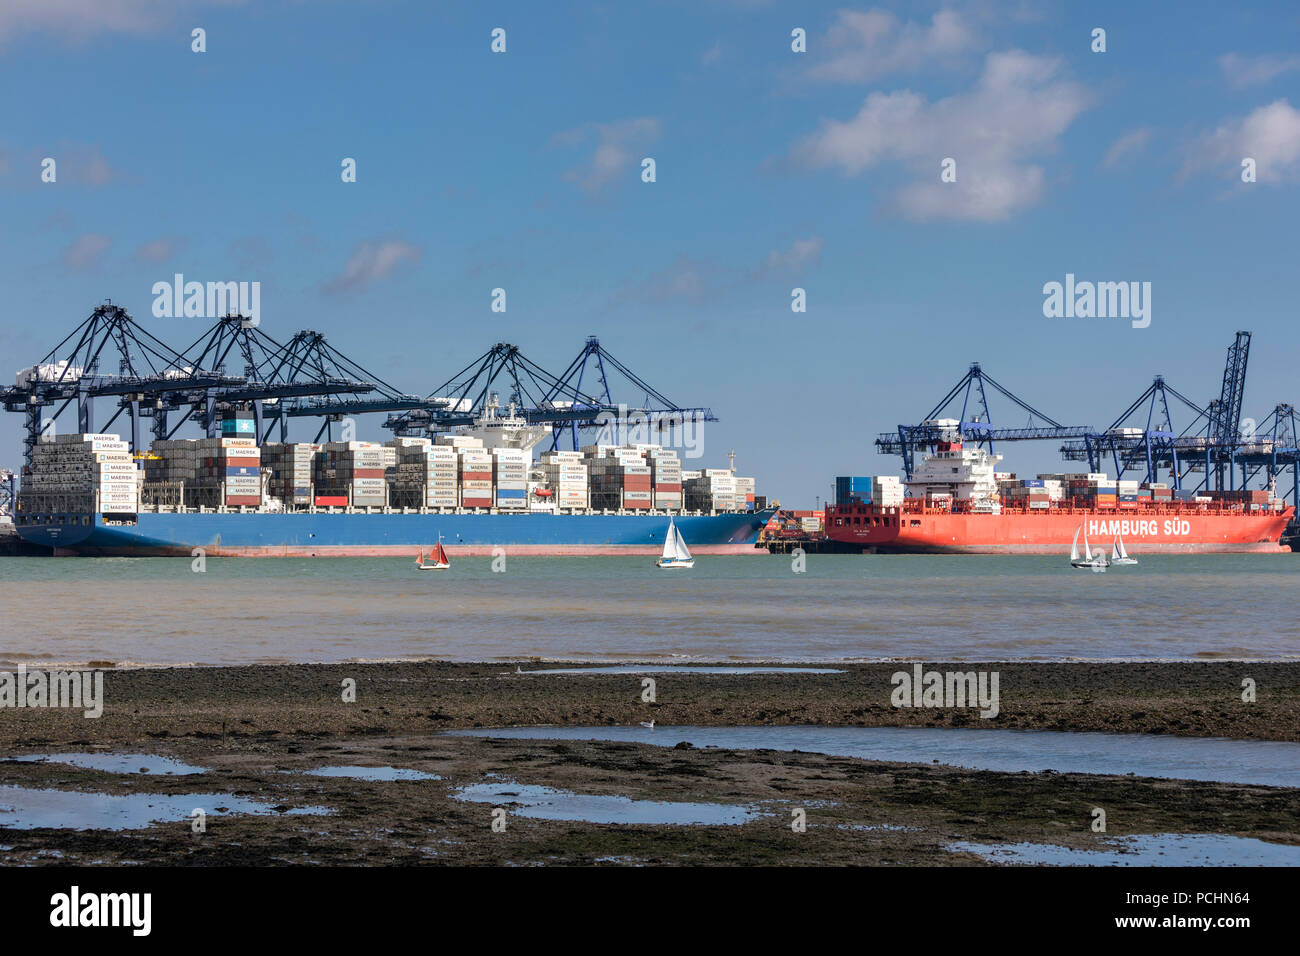 Ausländische Containerschiffe einschließlich deutsche Schiff Hamburg Sud am Hafen von Felixstowe Handhabung 42 % der britischen containerisierte Handel unter vorab Brexit Freihandelsabkommen regeln Stockfoto